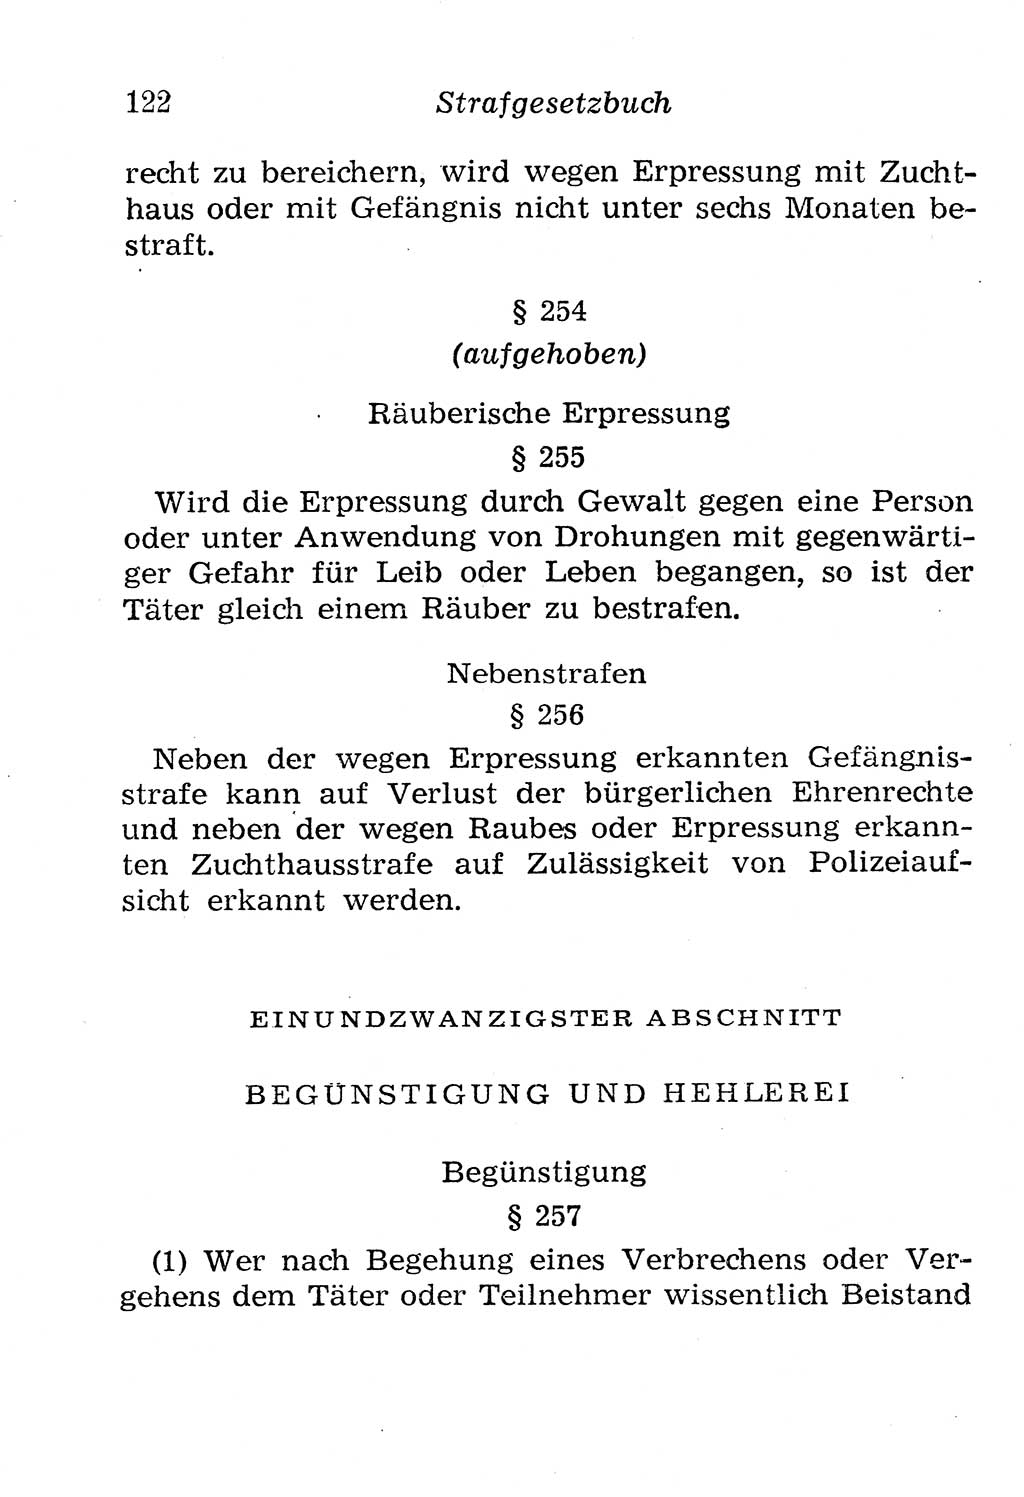 Strafgesetzbuch (StGB) und andere Strafgesetze [Deutsche Demokratische Republik (DDR)] 1958, Seite 122 (StGB Strafges. DDR 1958, S. 122)